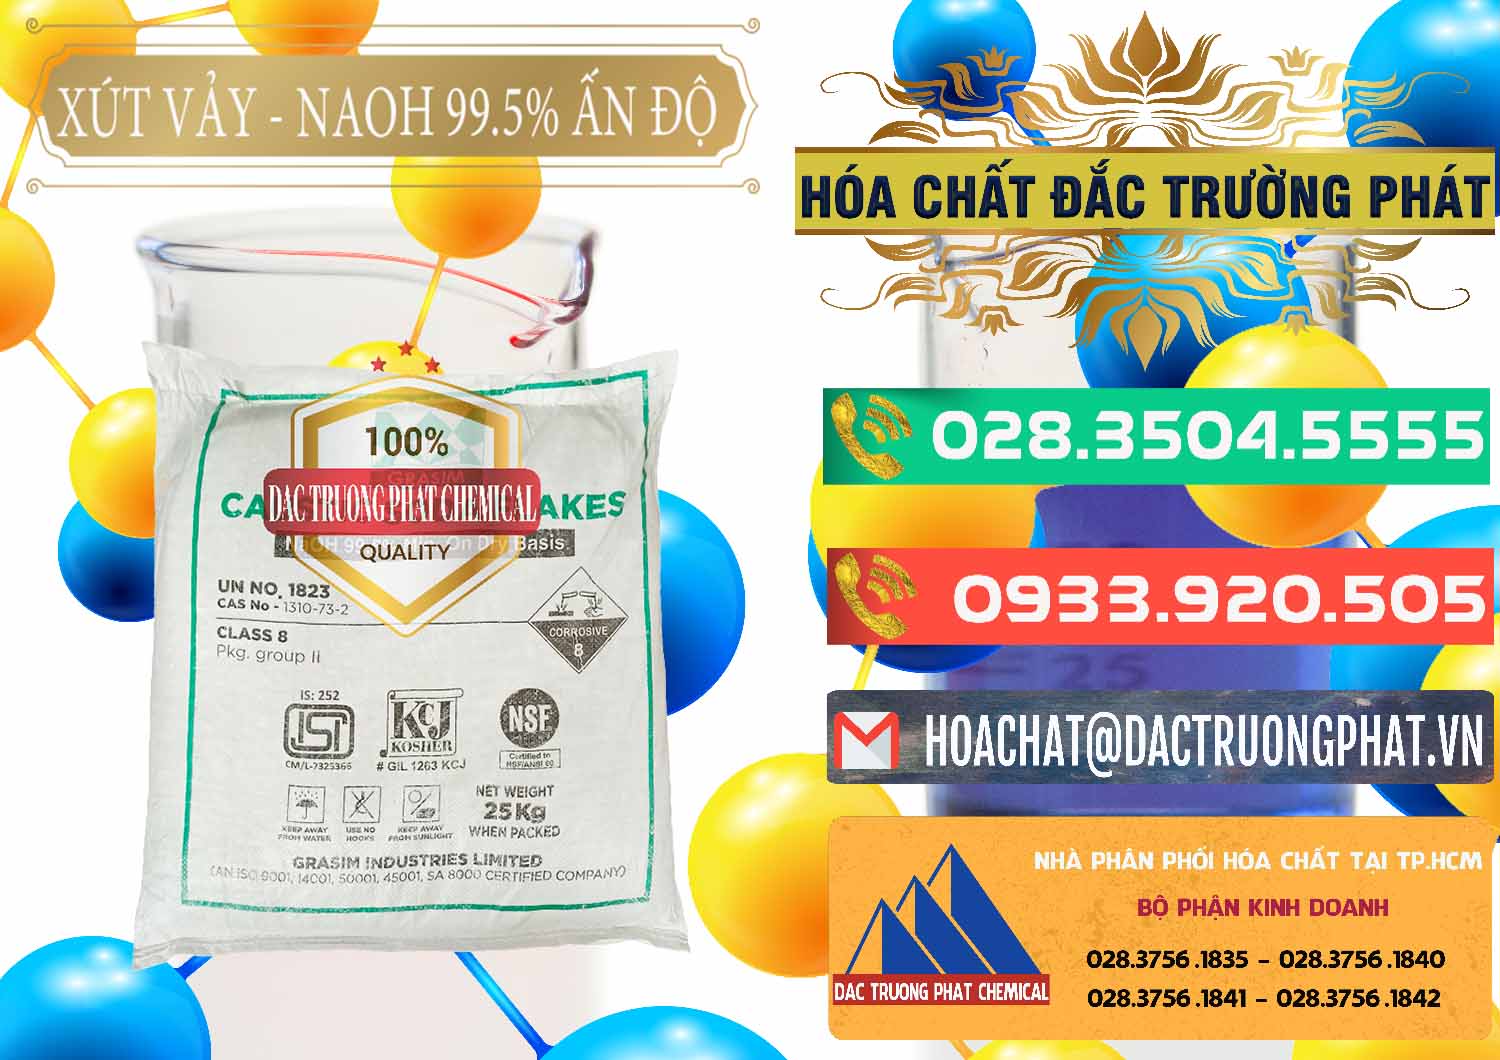 Công ty bán & phân phối Xút Vảy - NaOH Vảy 99.5% Aditya Birla Grasim Ấn Độ India - 0170 - Cty chuyên phân phối - kinh doanh hóa chất tại TP.HCM - congtyhoachat.com.vn